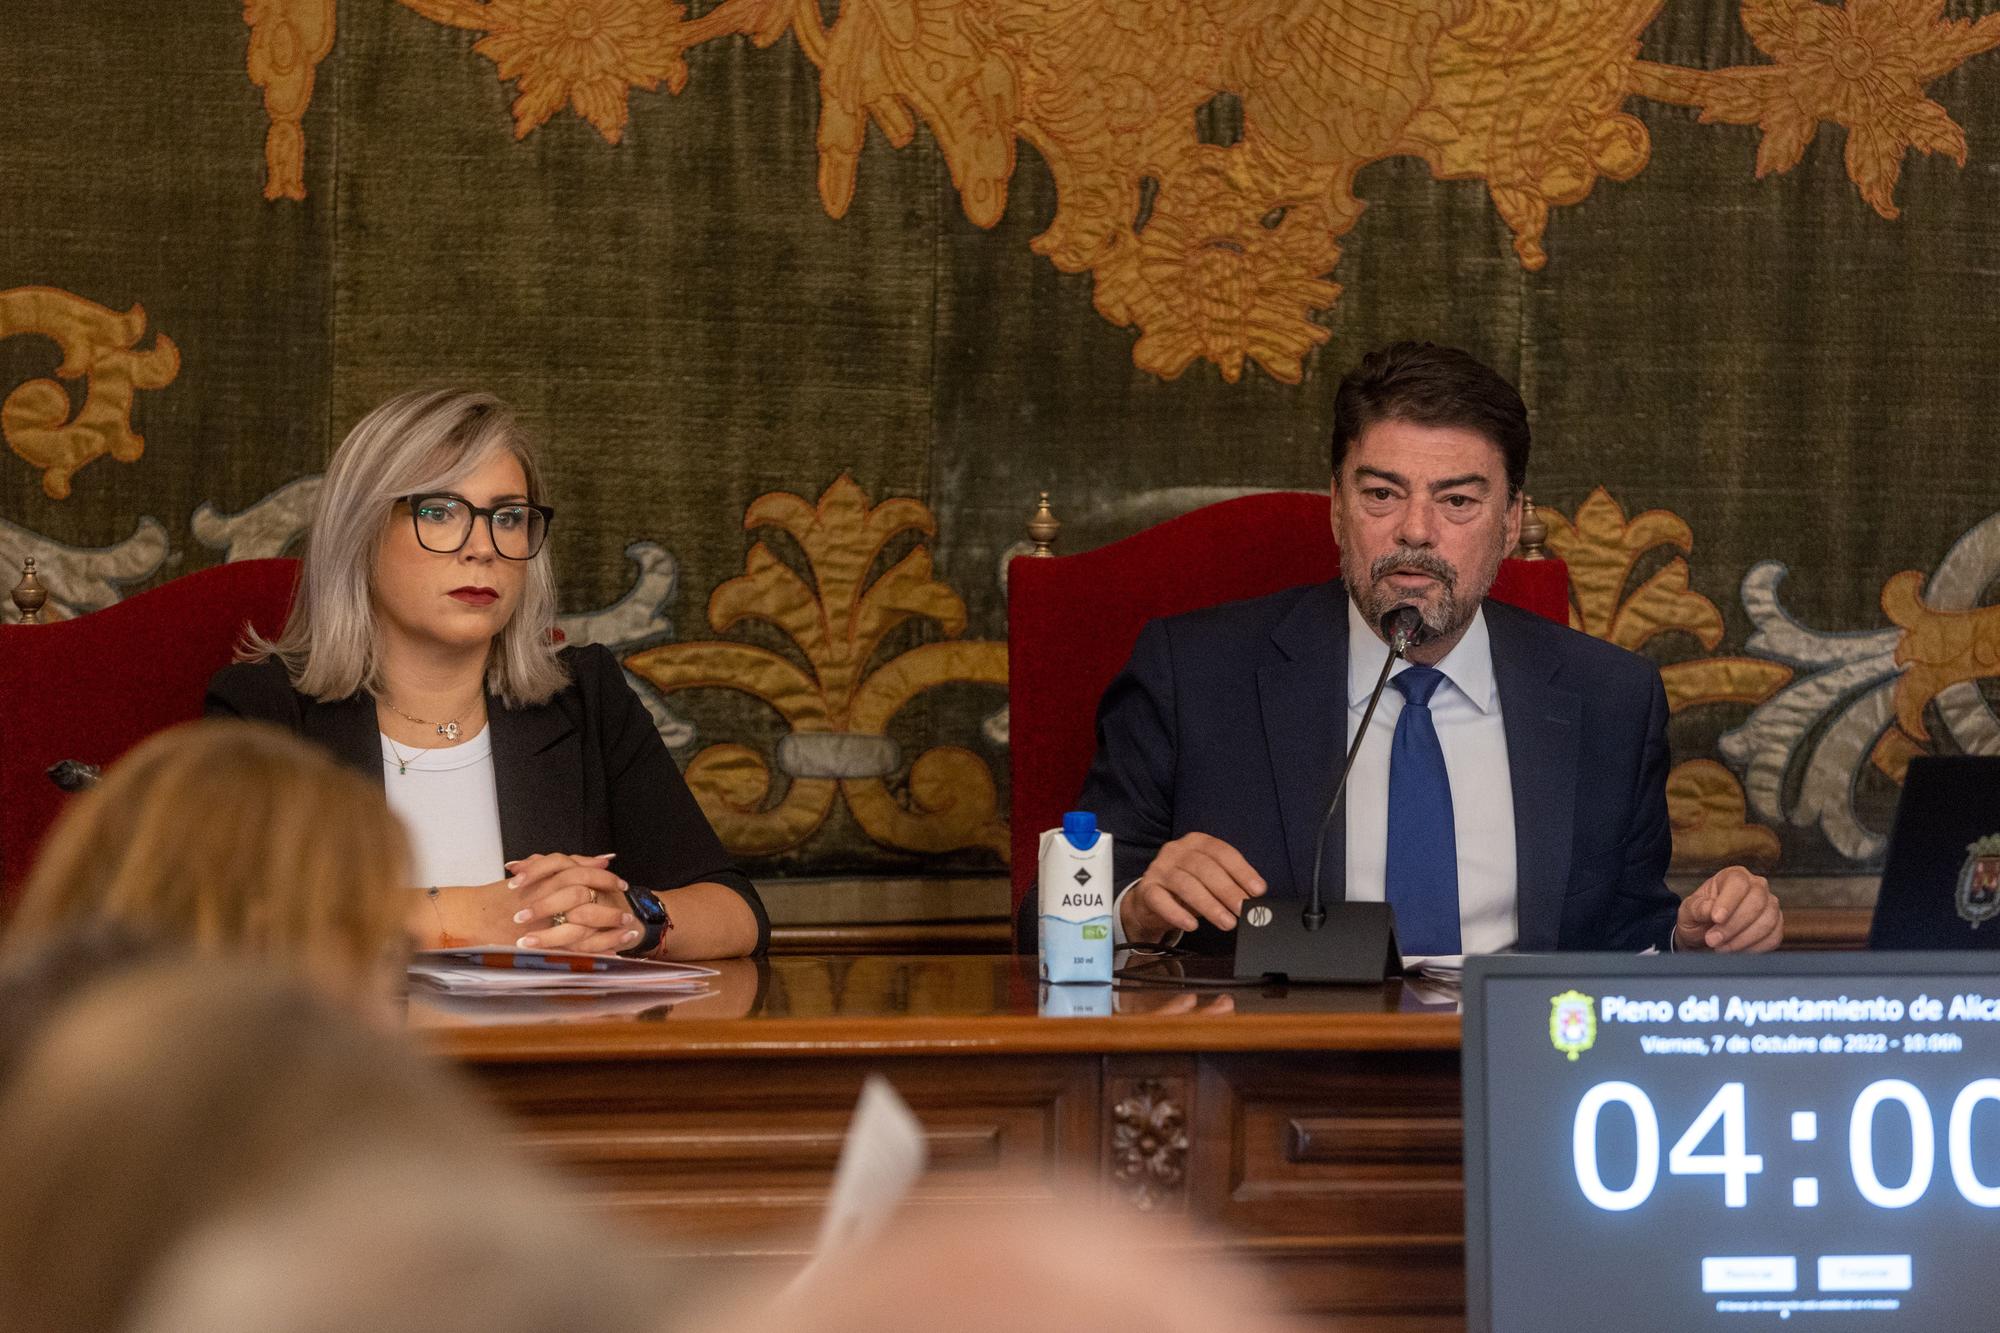 El debate del estado de la ciudad de Alicante en imagenes